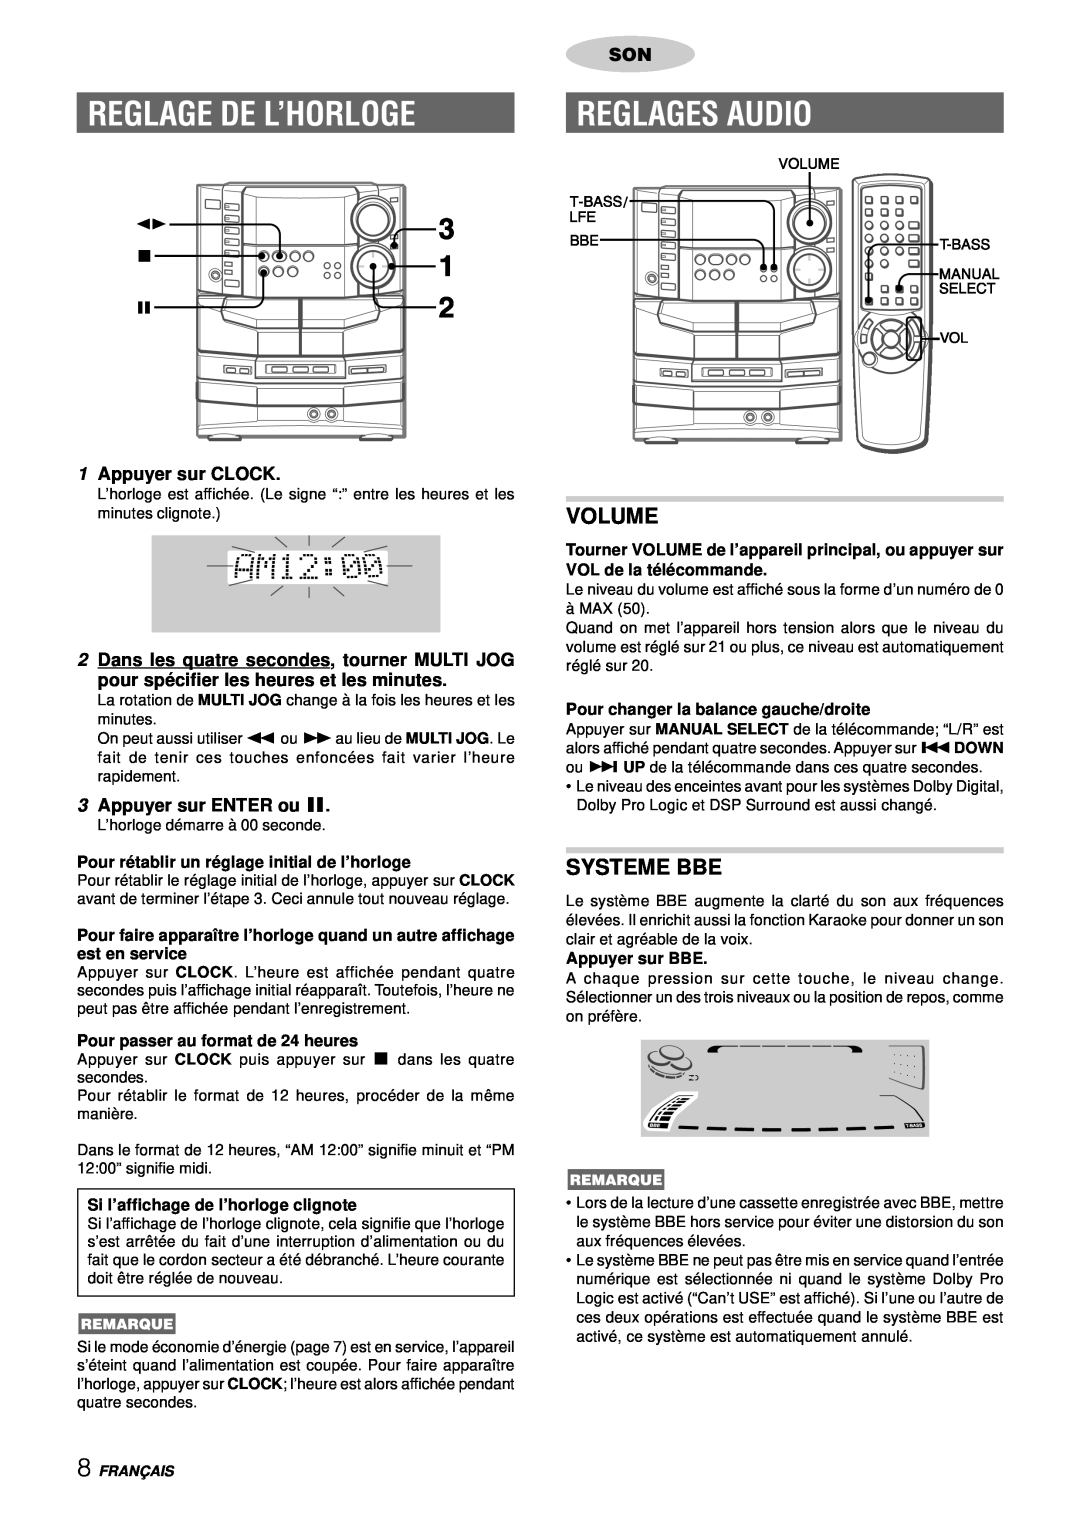 Aiwa NSX-DS8 manual Reglage De L’Horloge, Reglages Audio, Systeme Bbe, Volume, 1Appuyer sur CLOCK, 3Appuyer sur ENTER ou a 